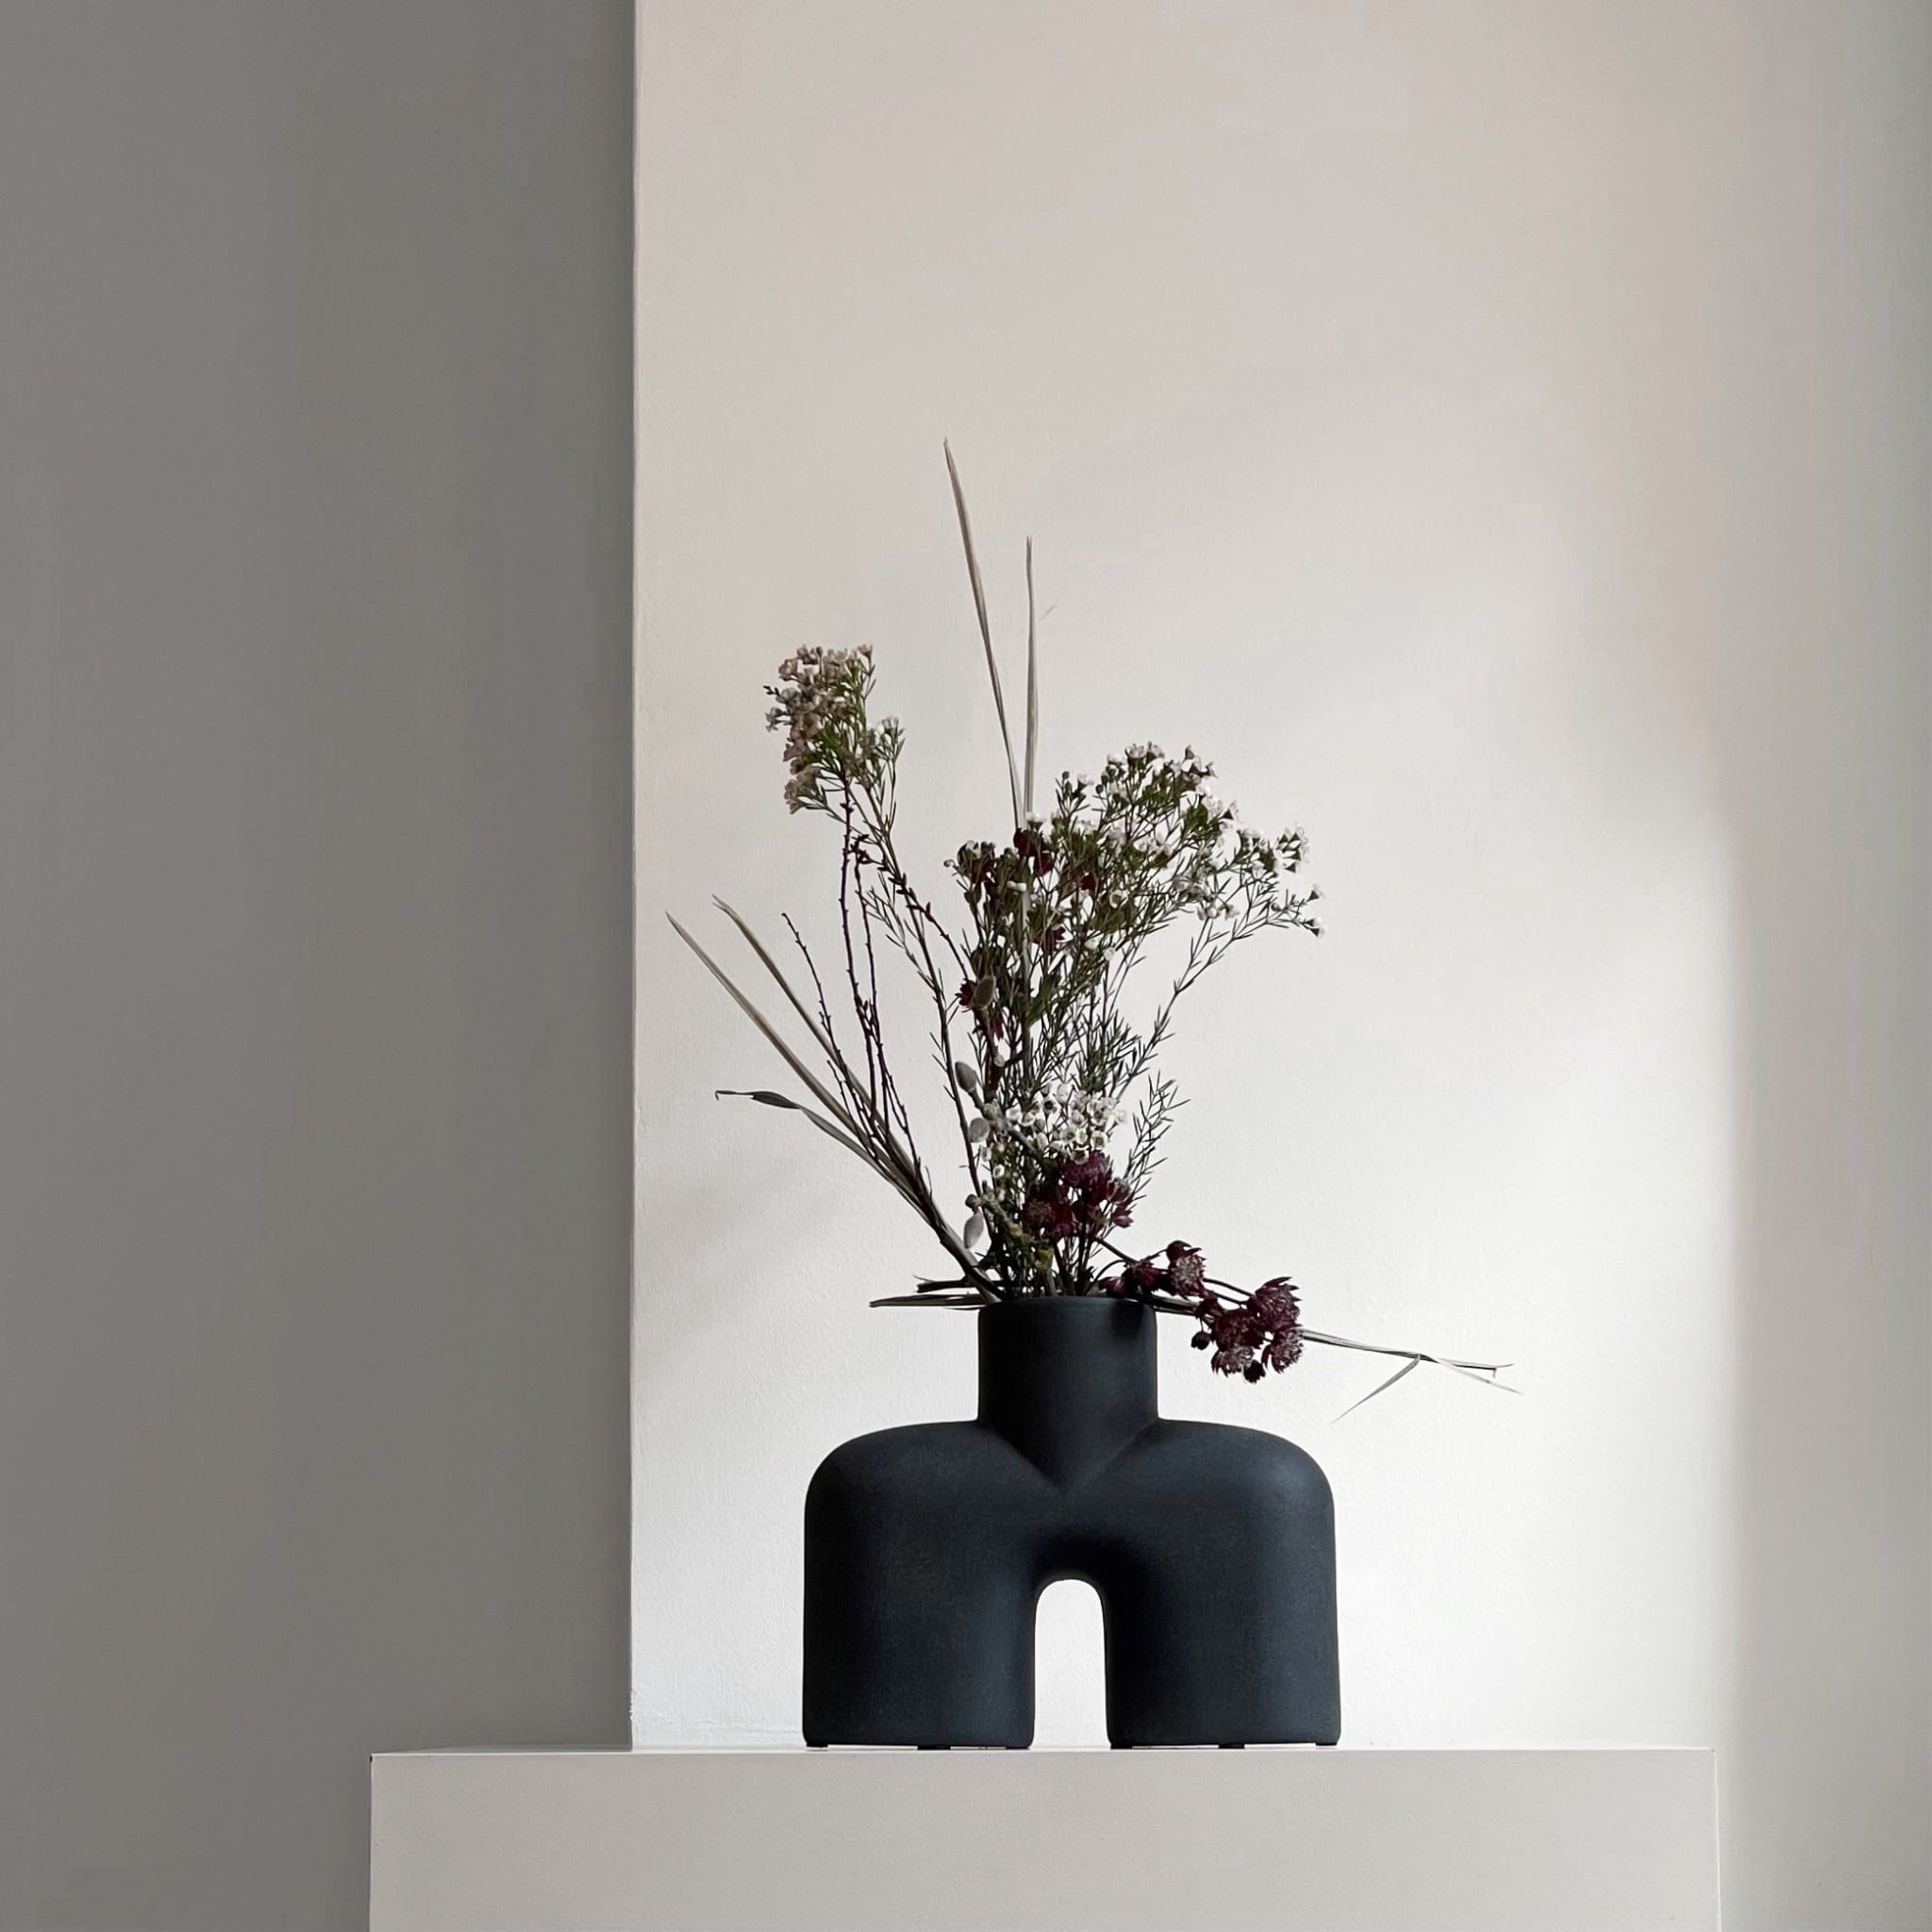 Storefactory Albacken vaso, bianco rotondo piccolo — Aito Nordic